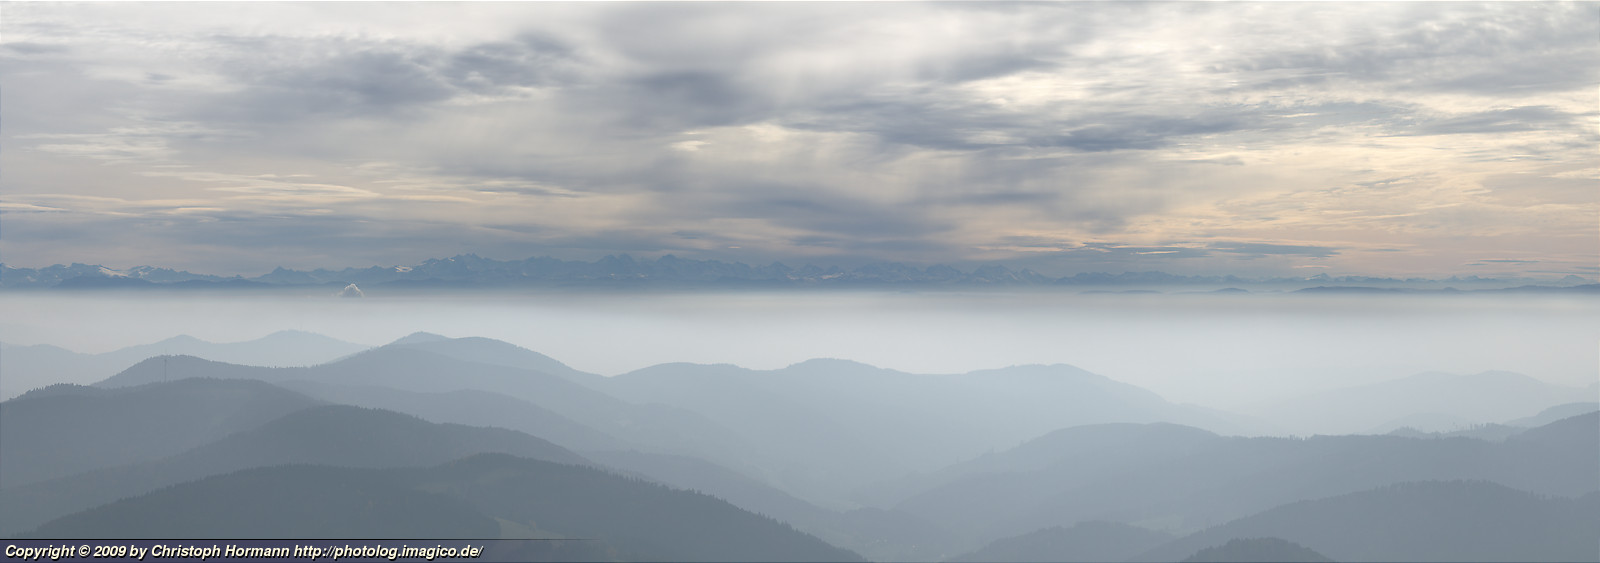 Bild 48: Alpen-Panorama über den Hügeln des südlichen Schwarzwalds